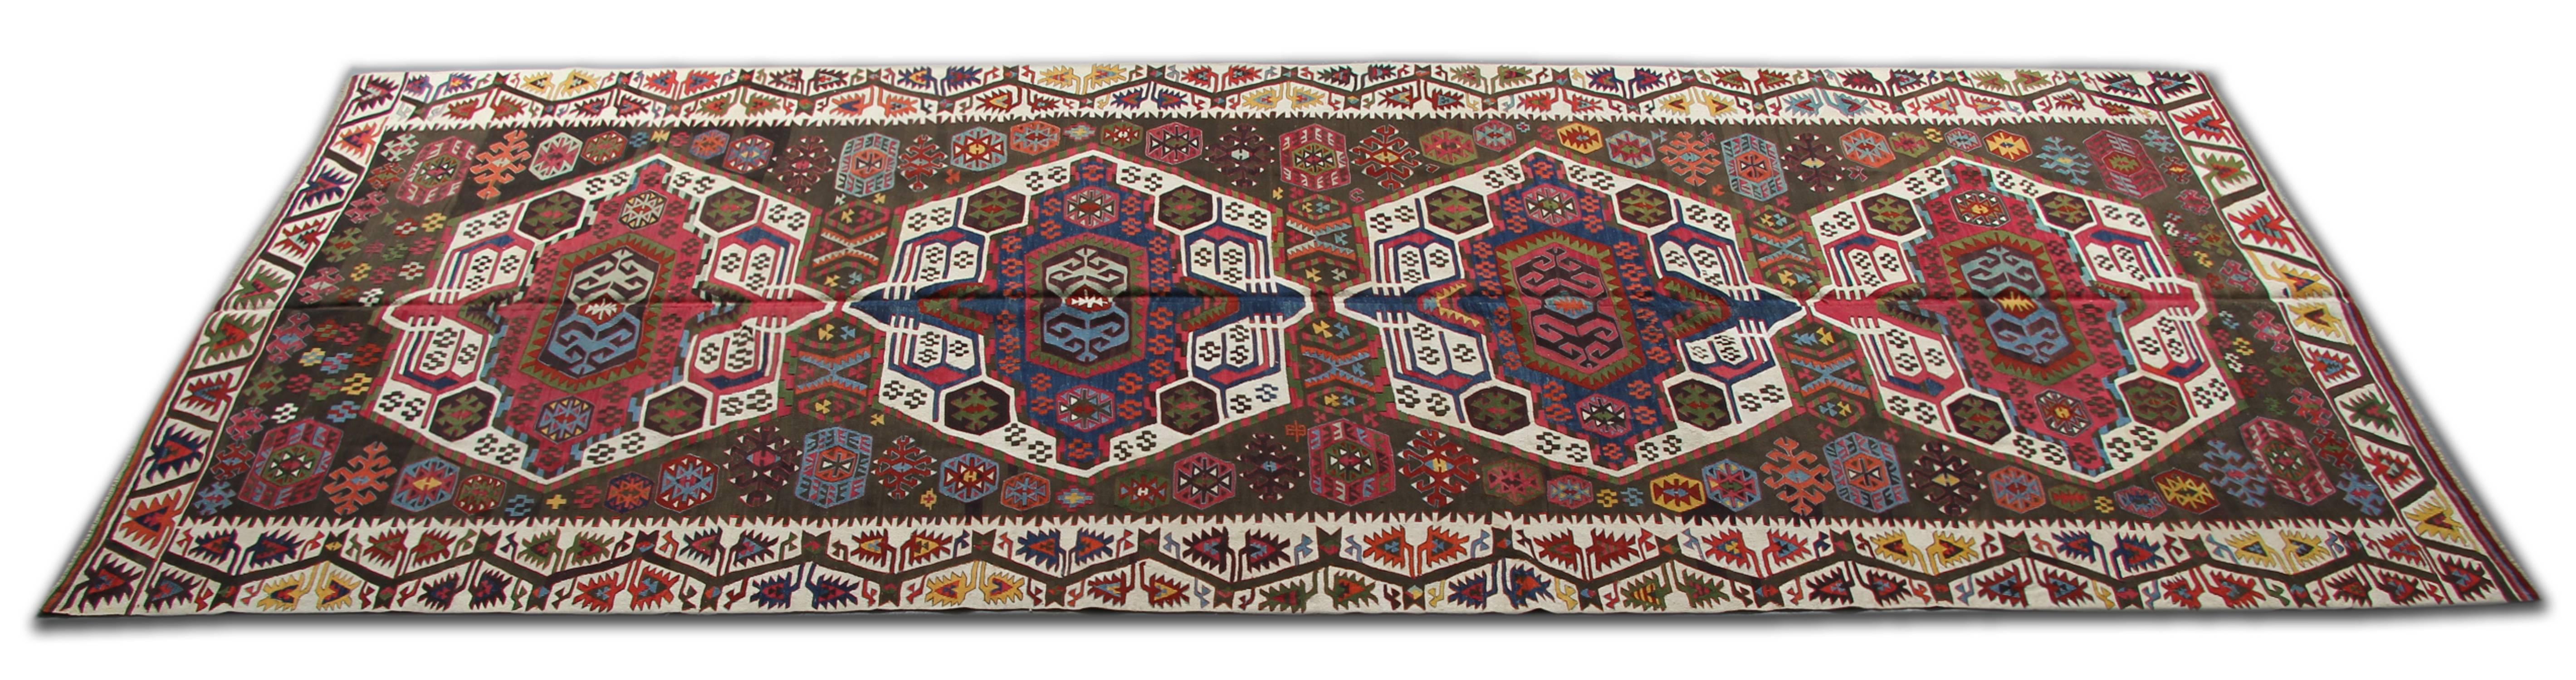 Ce tapis turc est Kayseri antique tapis traditionnel tissé à la main runner rugs viennent de la conception de tapis caucasien monde. Ce type de tapis convient aux tapis d'escalier et aux tapis de couloir. Dans une combinaison frappante de couleurs :